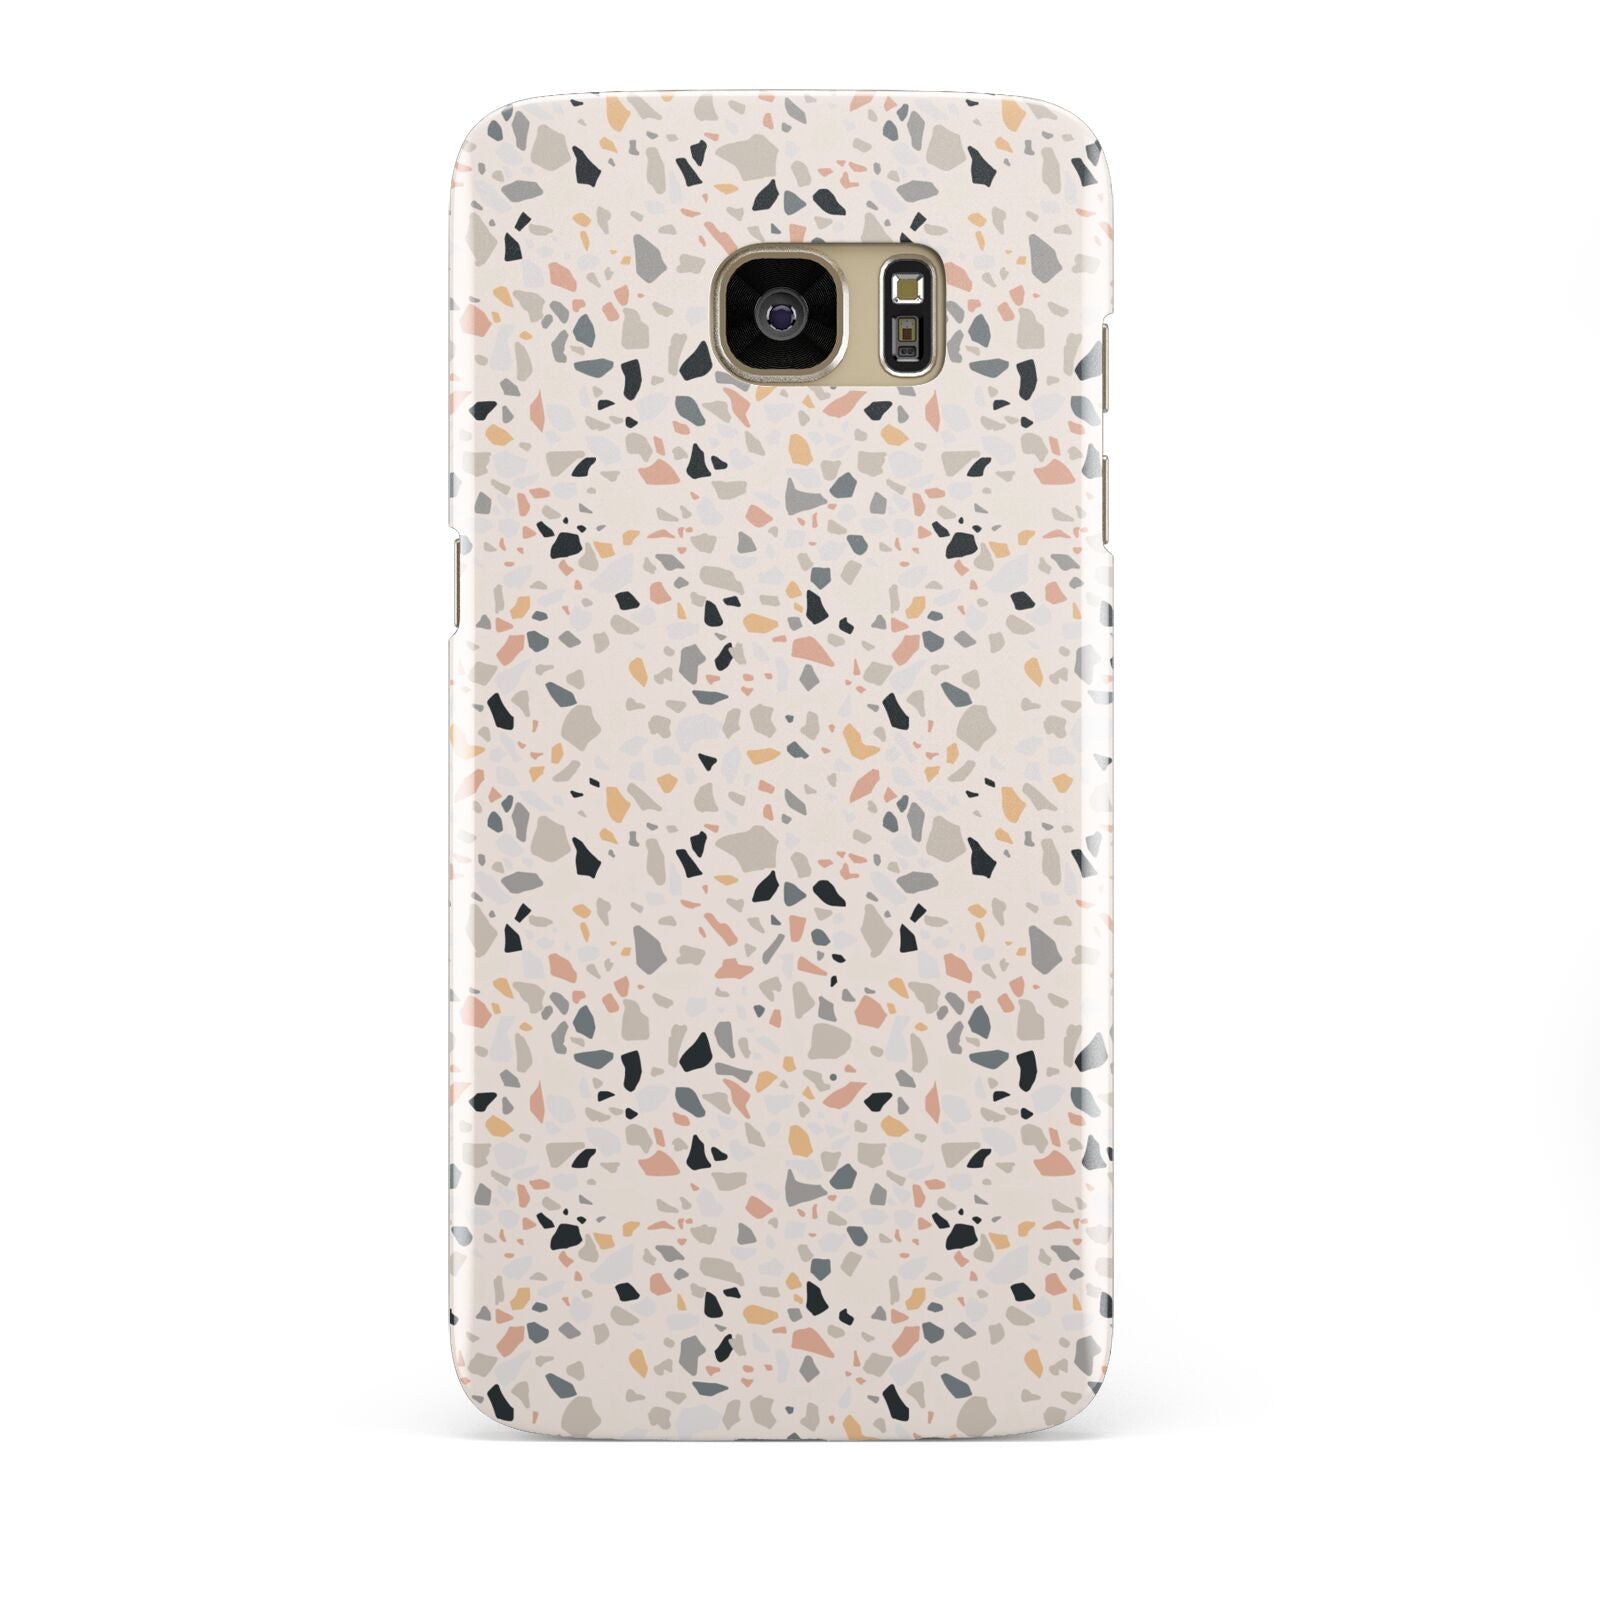 Terrazzo Stone Samsung Galaxy S7 Edge Case